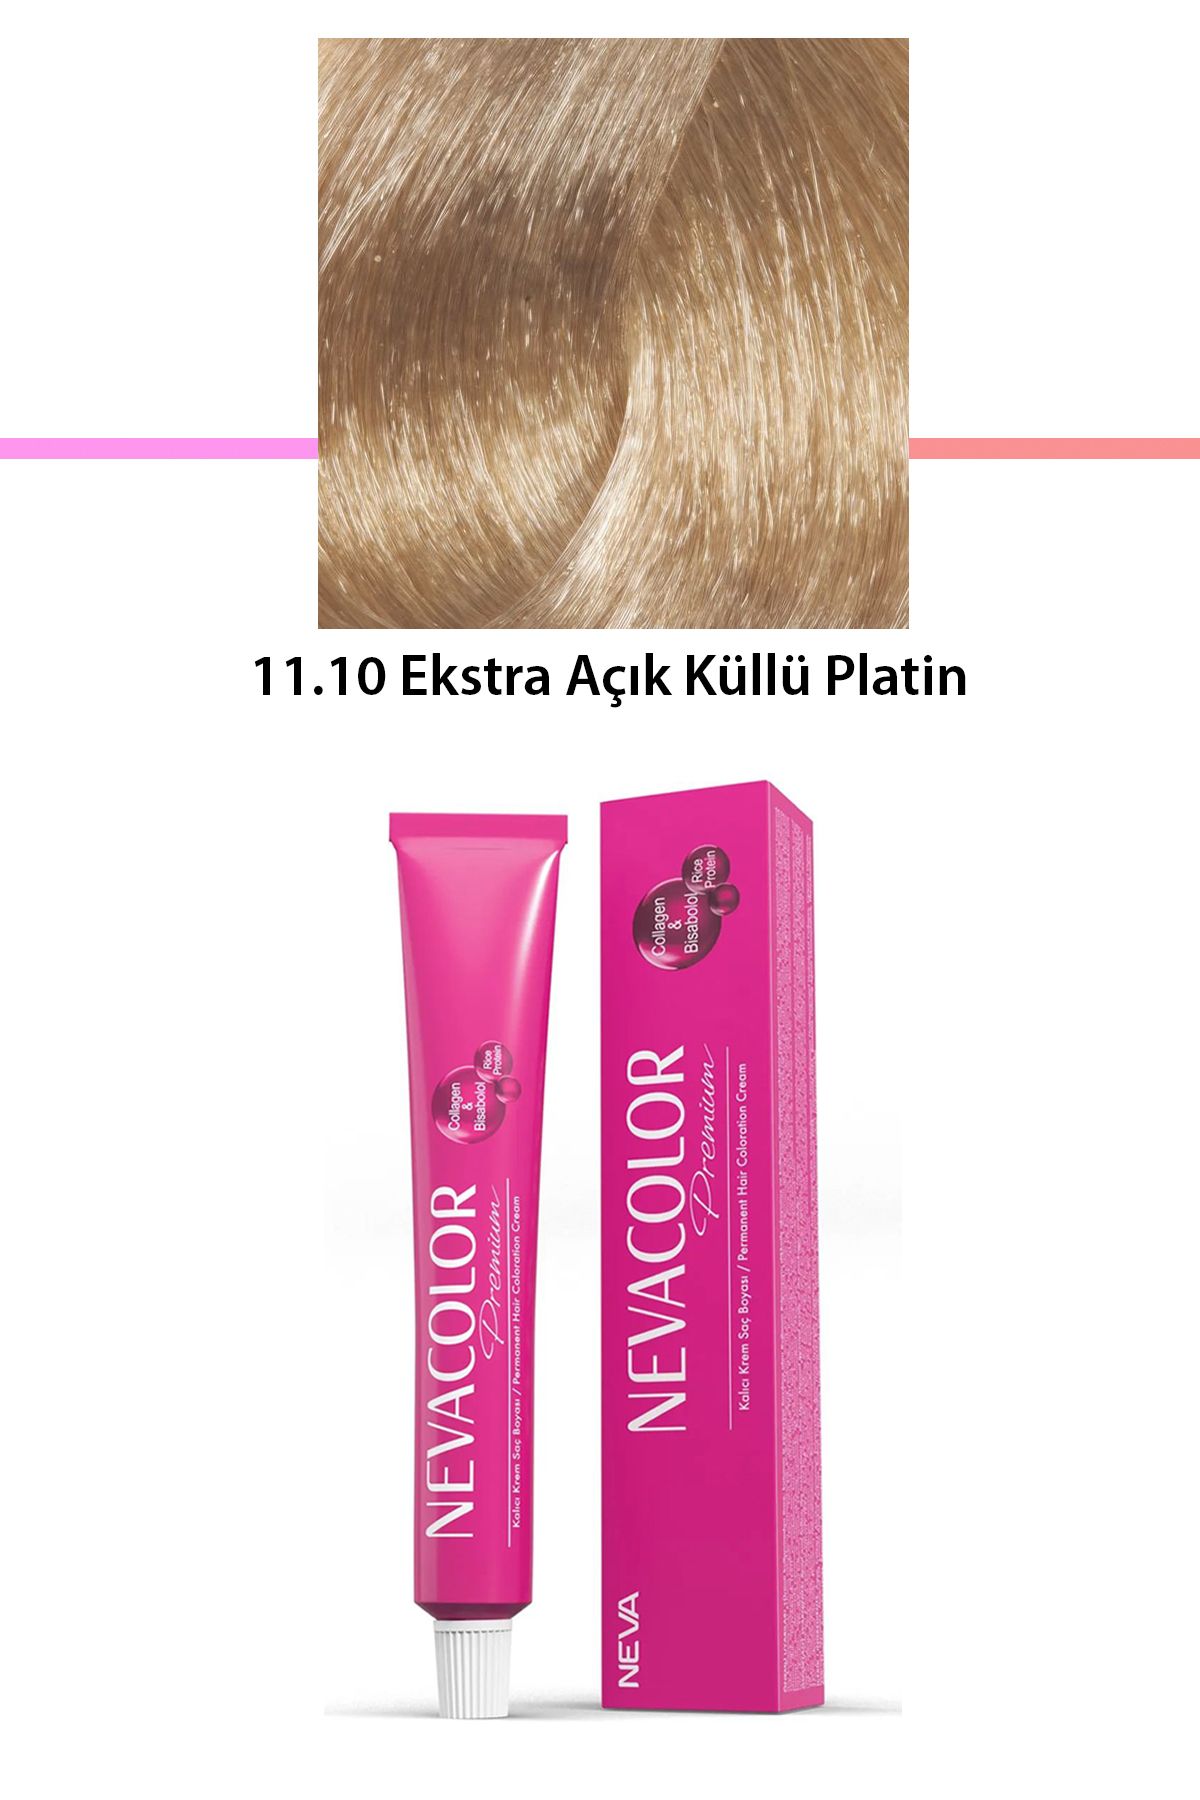 Neva Color Premium 11.10 Ekstra Açık Küllü Platin - Kalıcı Krem Saç Boyası 50 g Tüp